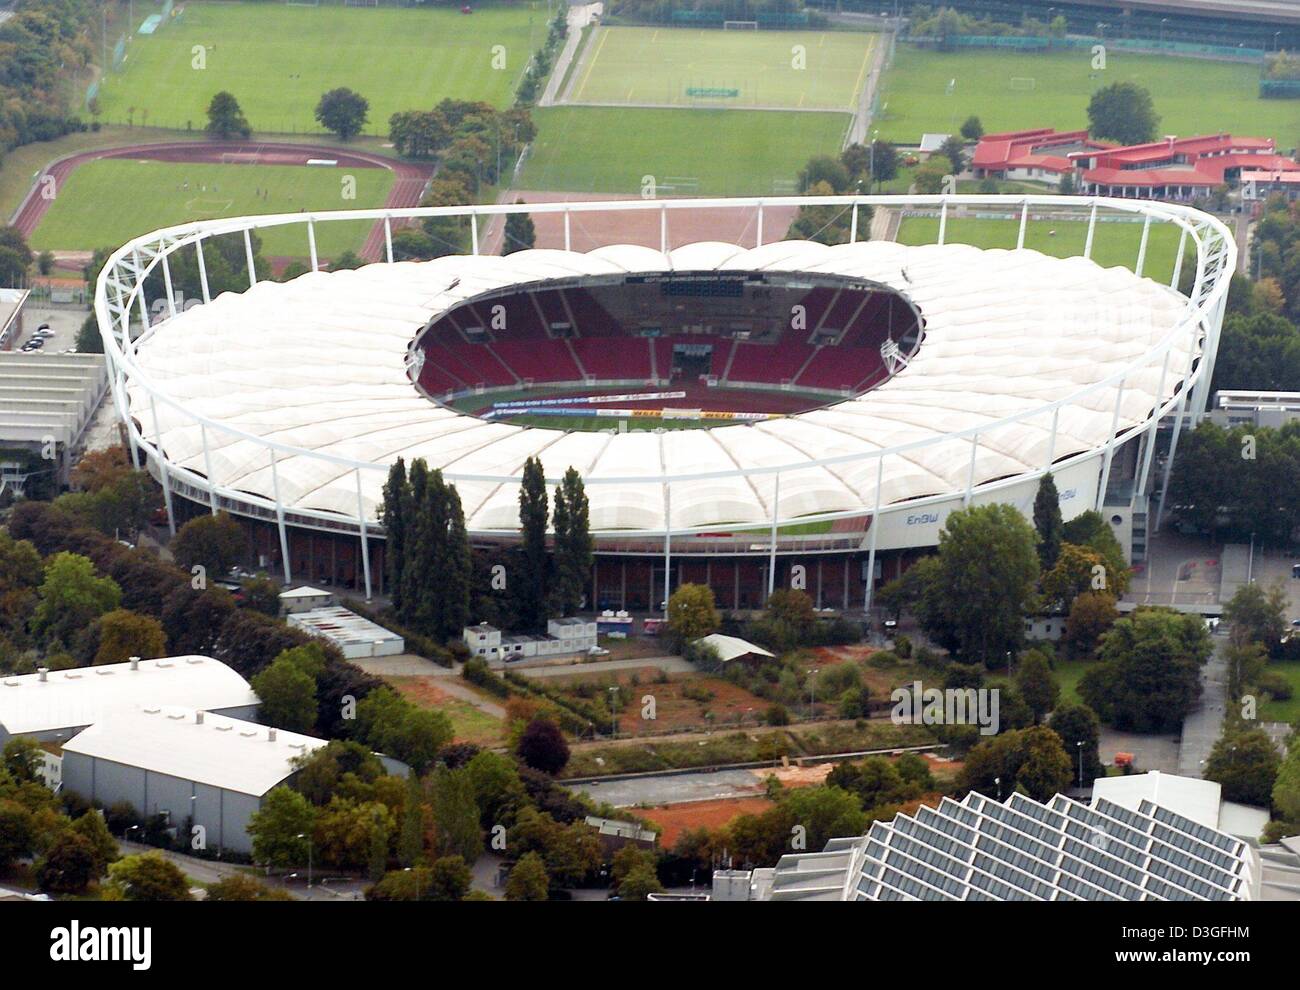 (Afp) - vue aérienne du stade Gottlieb-daimler à Stuttgart, Allemagne, 14 septembre 2004. L'ancien "Neckarstadion' fait partie des 55 hectares grand centre sportif Cannstatter Wasen. La caractéristique la plus remarquable du stade rénové est le câble d'acier conception de la membrane toit qui couvre tous les sièges dans le stade. Le stade est utilisé pour les jeux de football, sportif se réunit et othe Banque D'Images